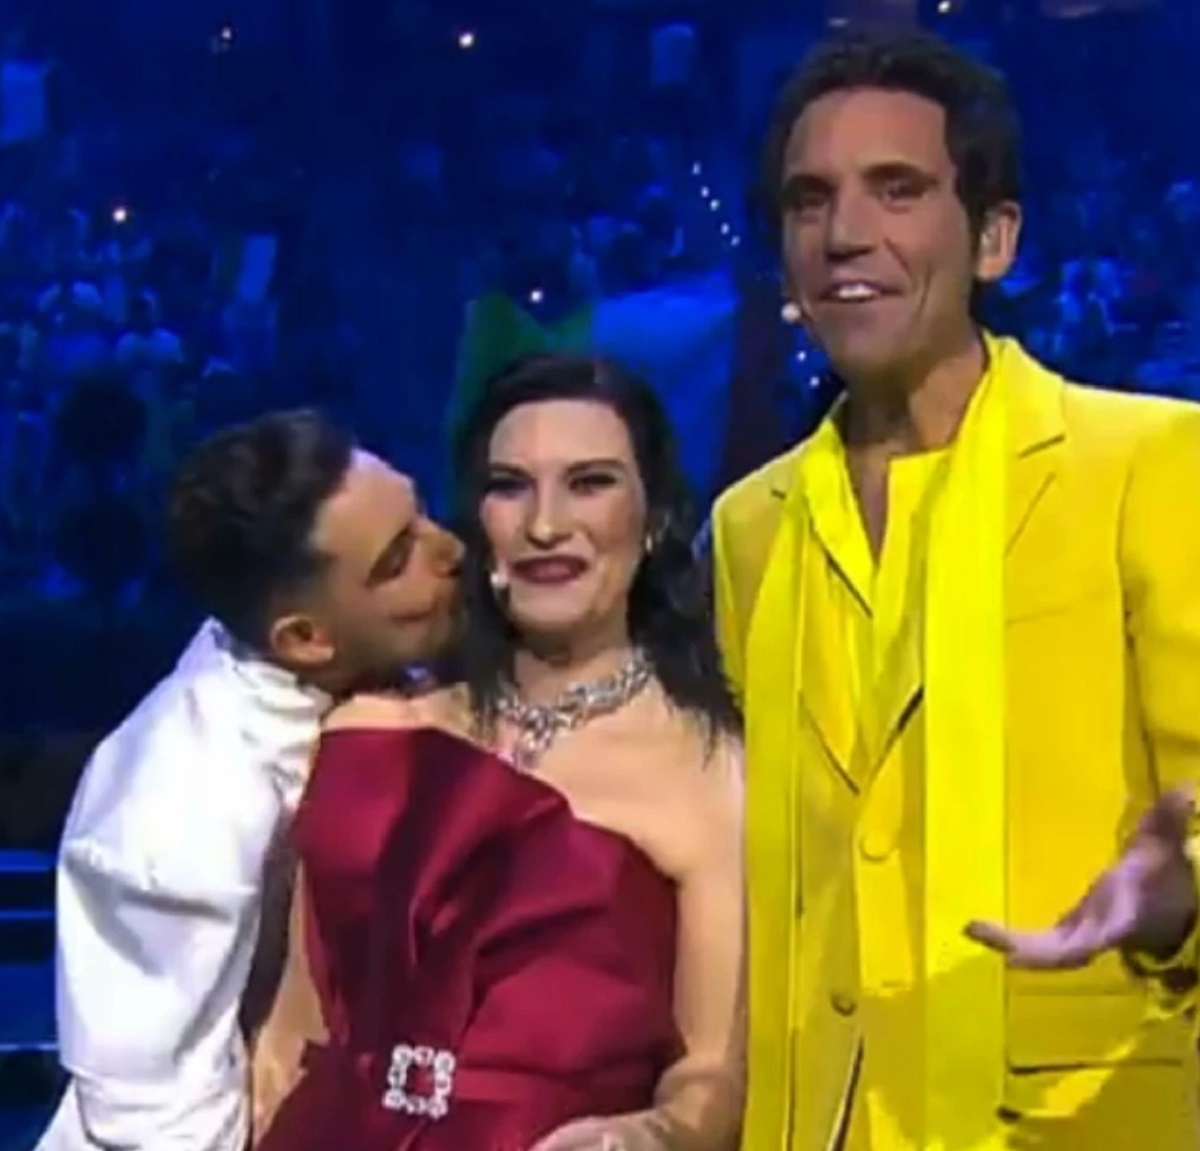 Eurovision 2022 gesto Michael Ben David bacio squalifica motivo